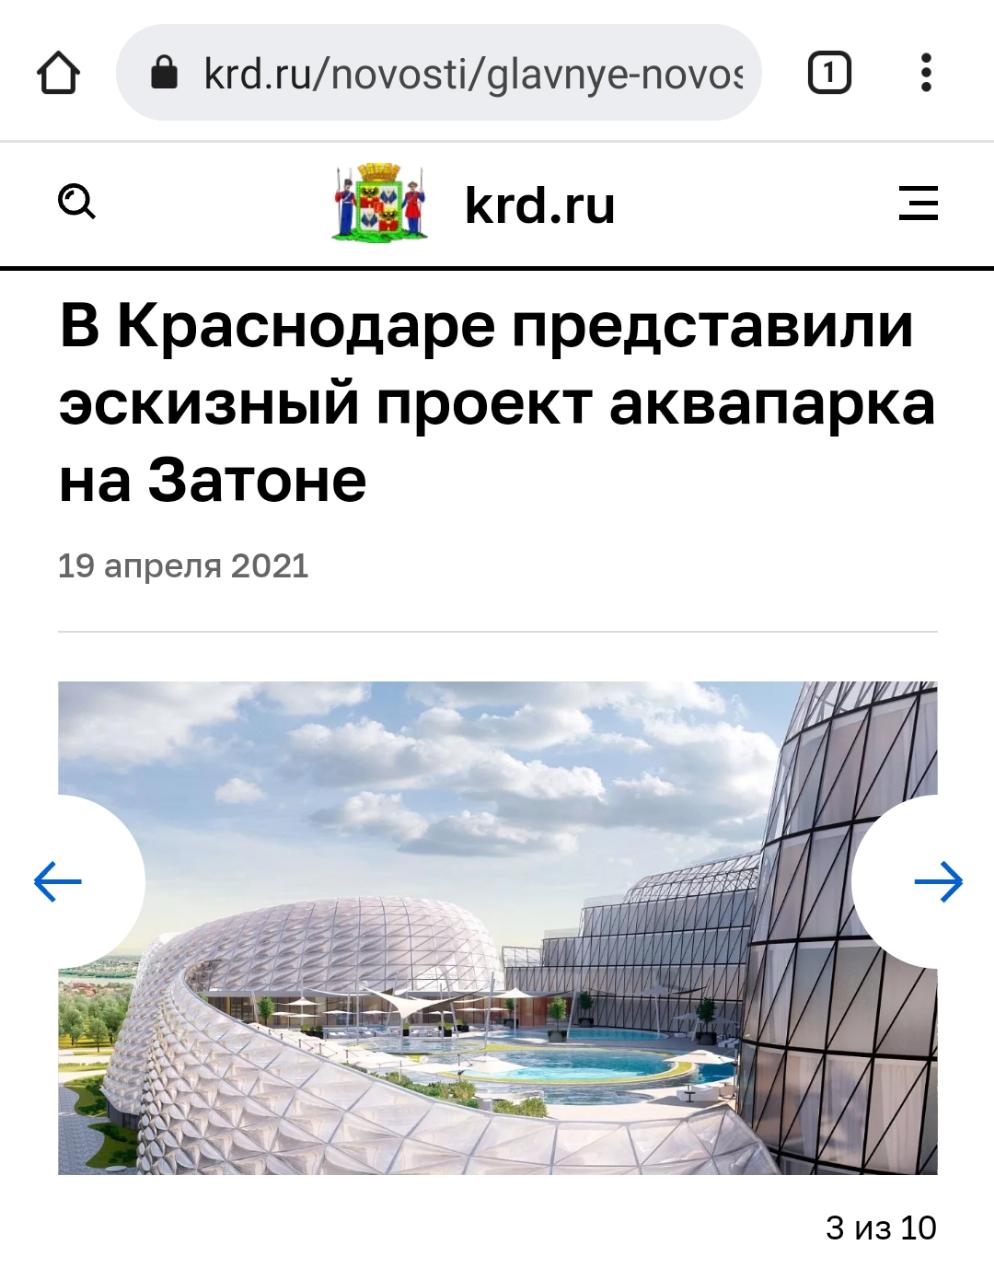 Собачьи миски у «болота»: в соцсетях вновь заговорили о проекте аквапарка в Краснодаре